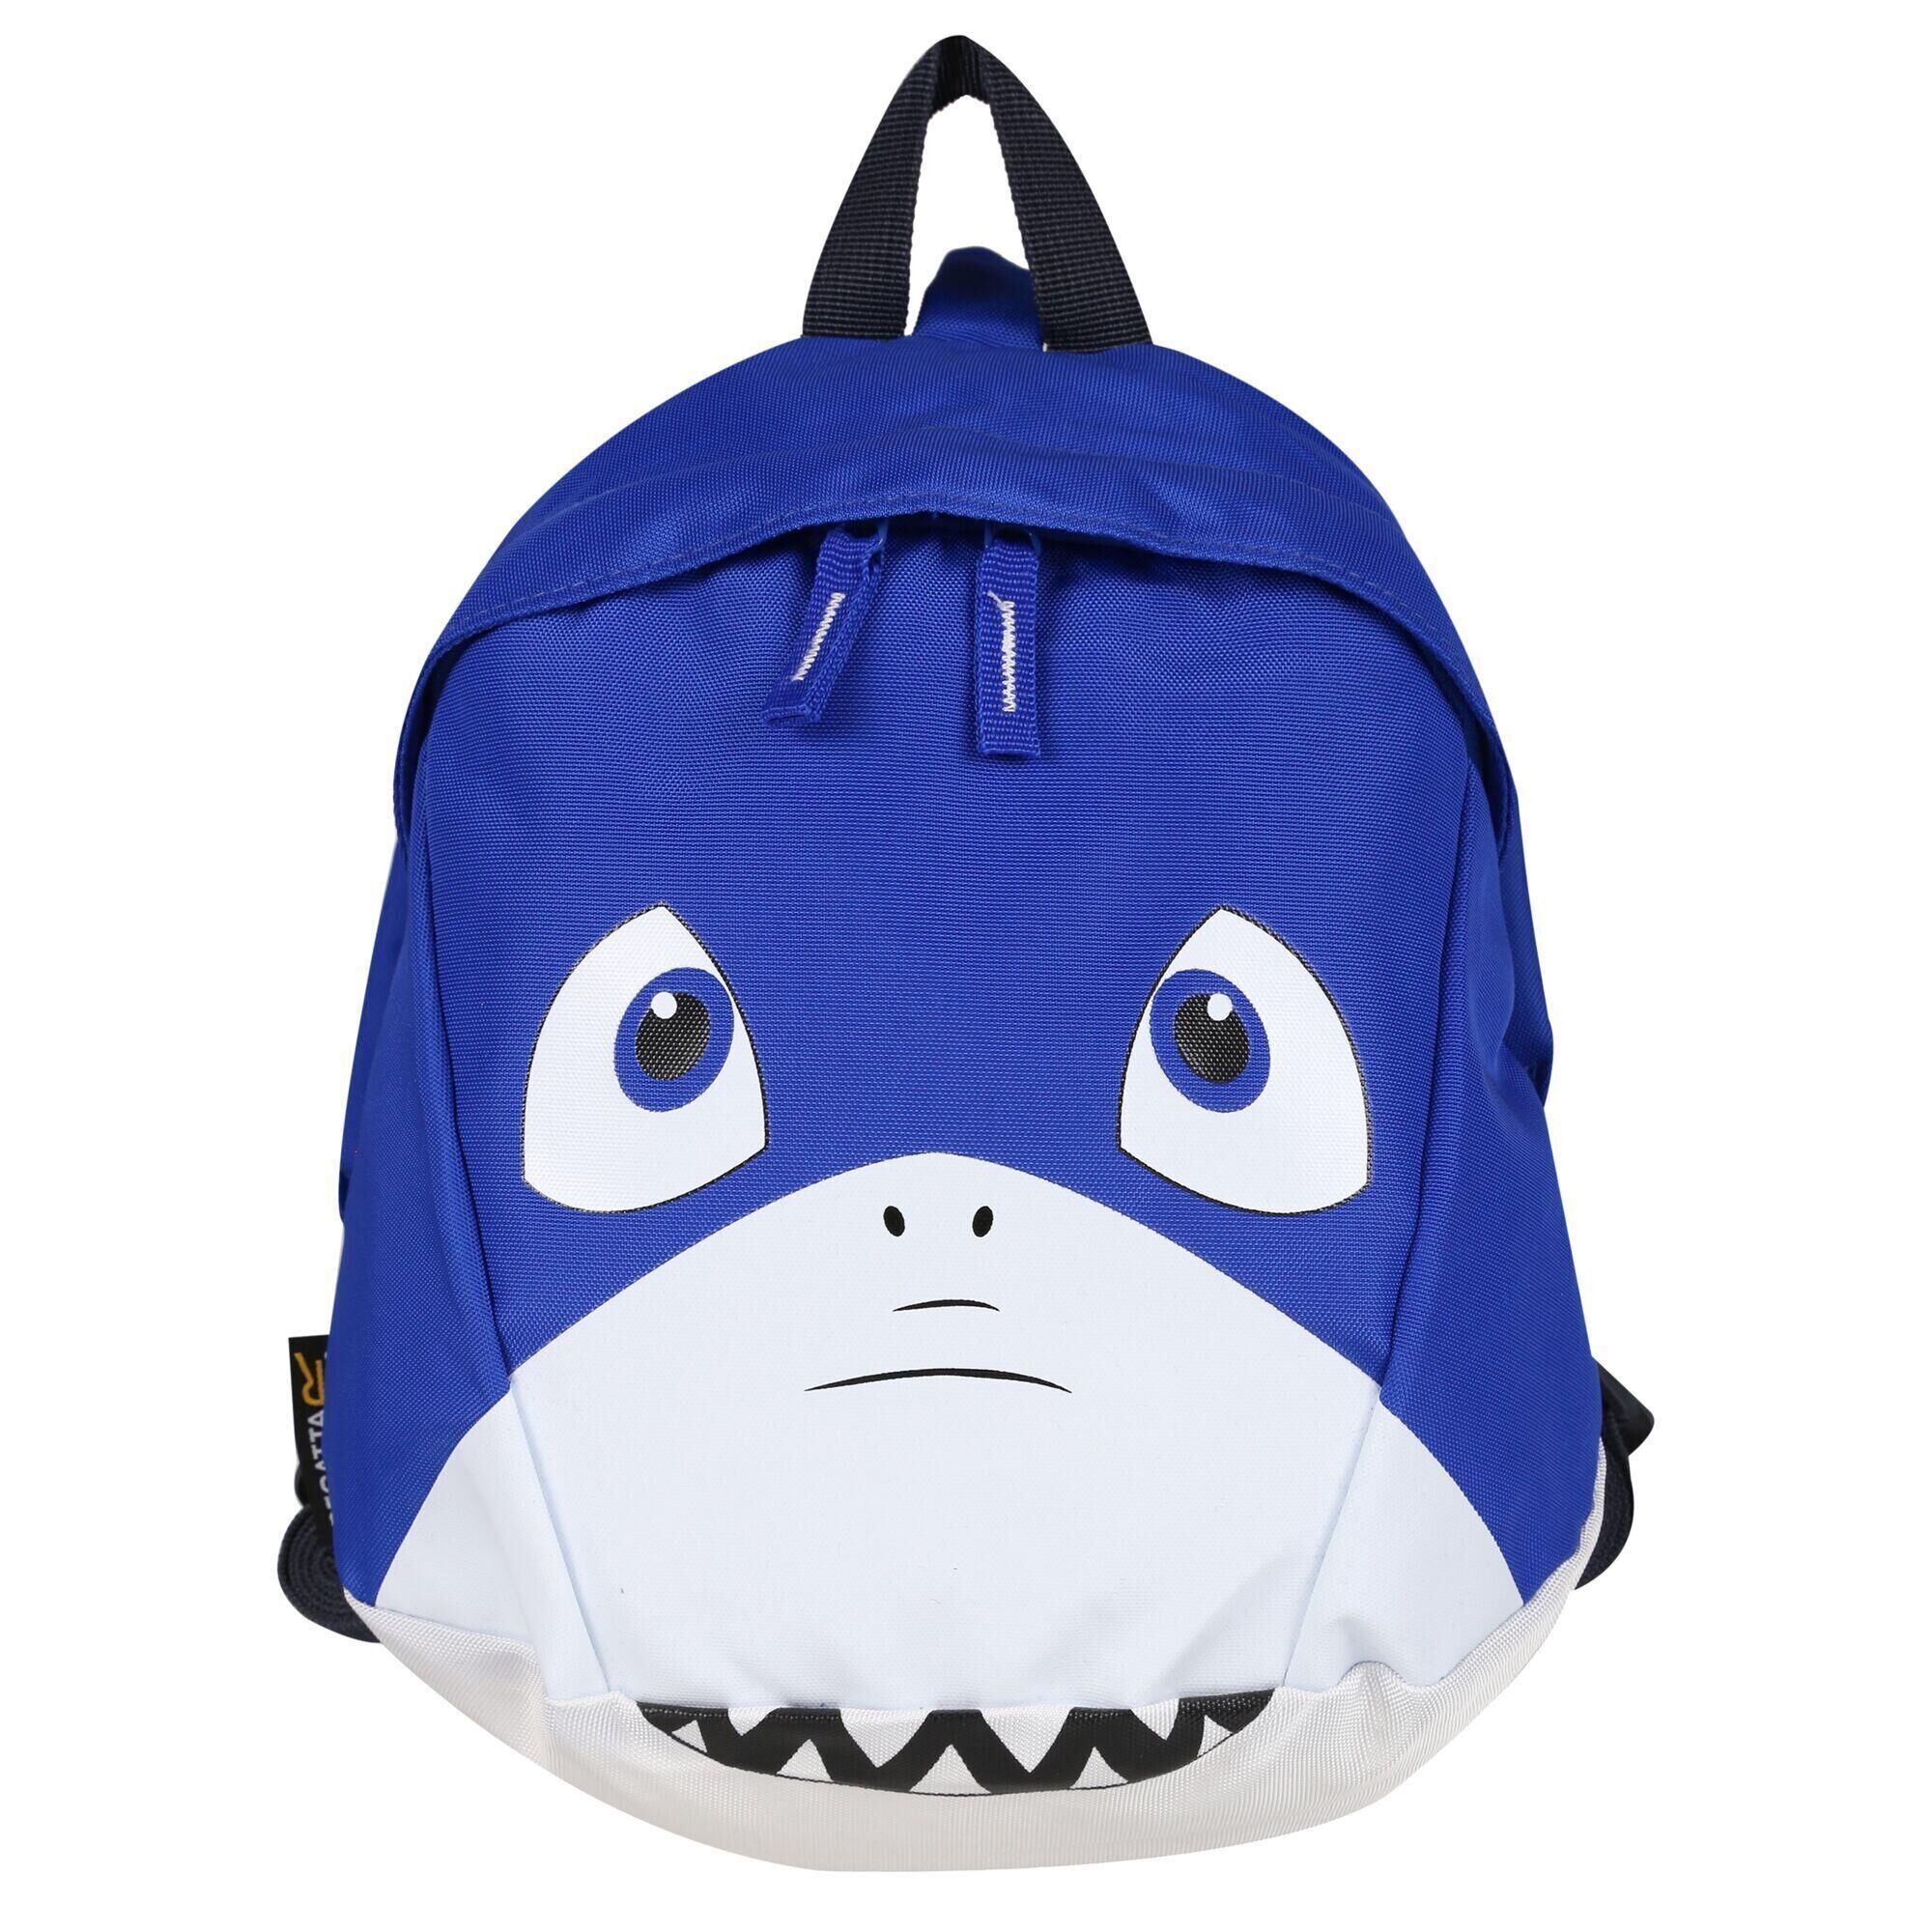 REGATTA Childrens/Kids Roary Animal Shark Backpack (Blue)